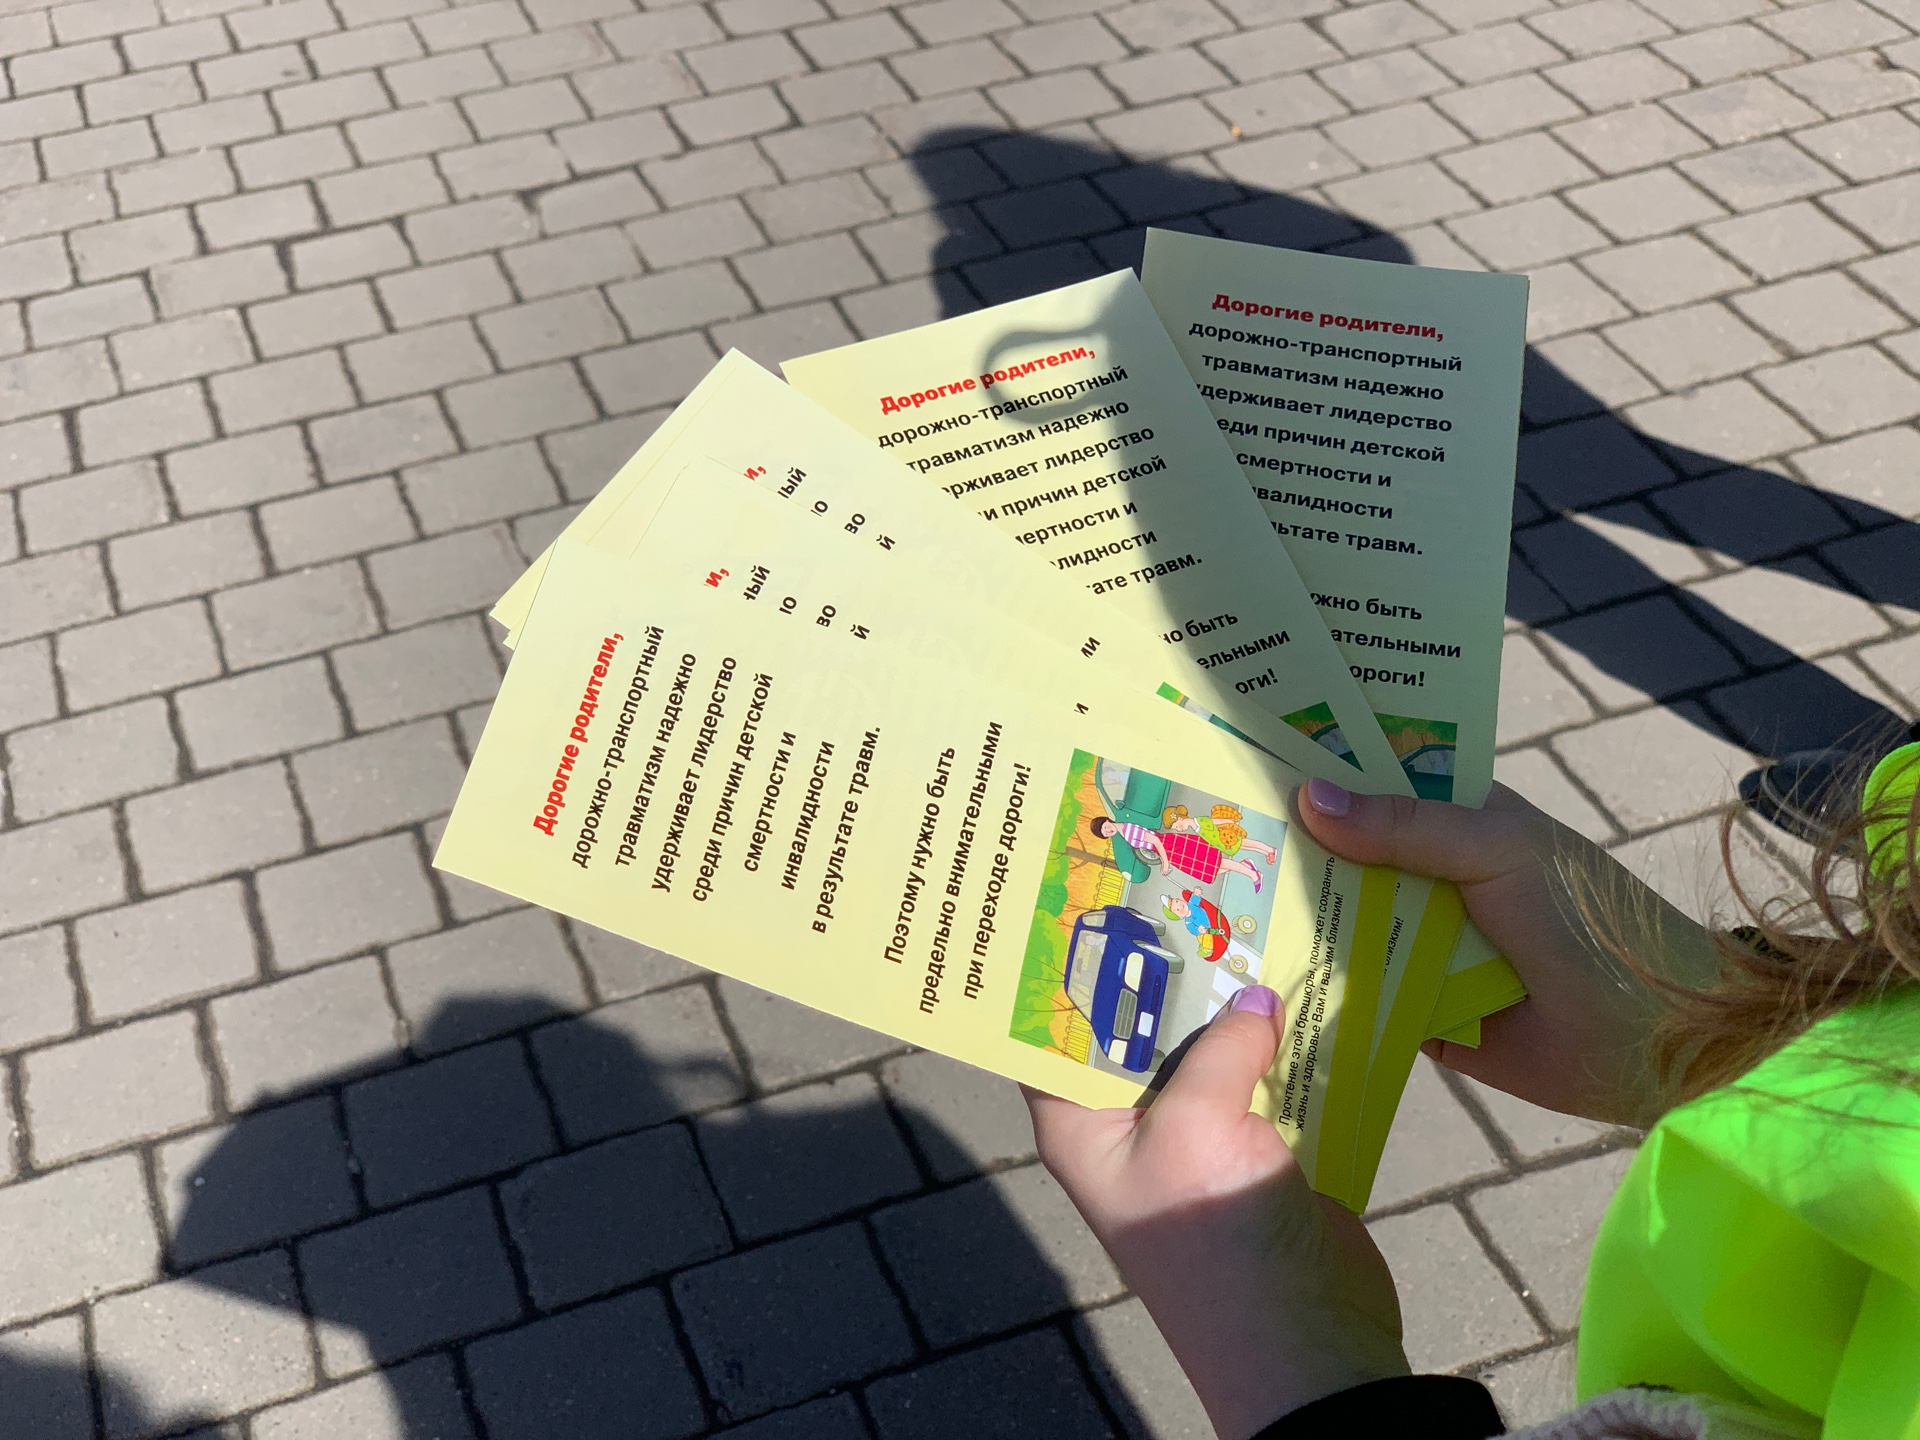 Госавтоинспекторы Юго-Западного округа Москвы совместно с отрядом ЮИД провели профилактическое мероприятие «Юные инспекторы движения за безопасность на дорогах»